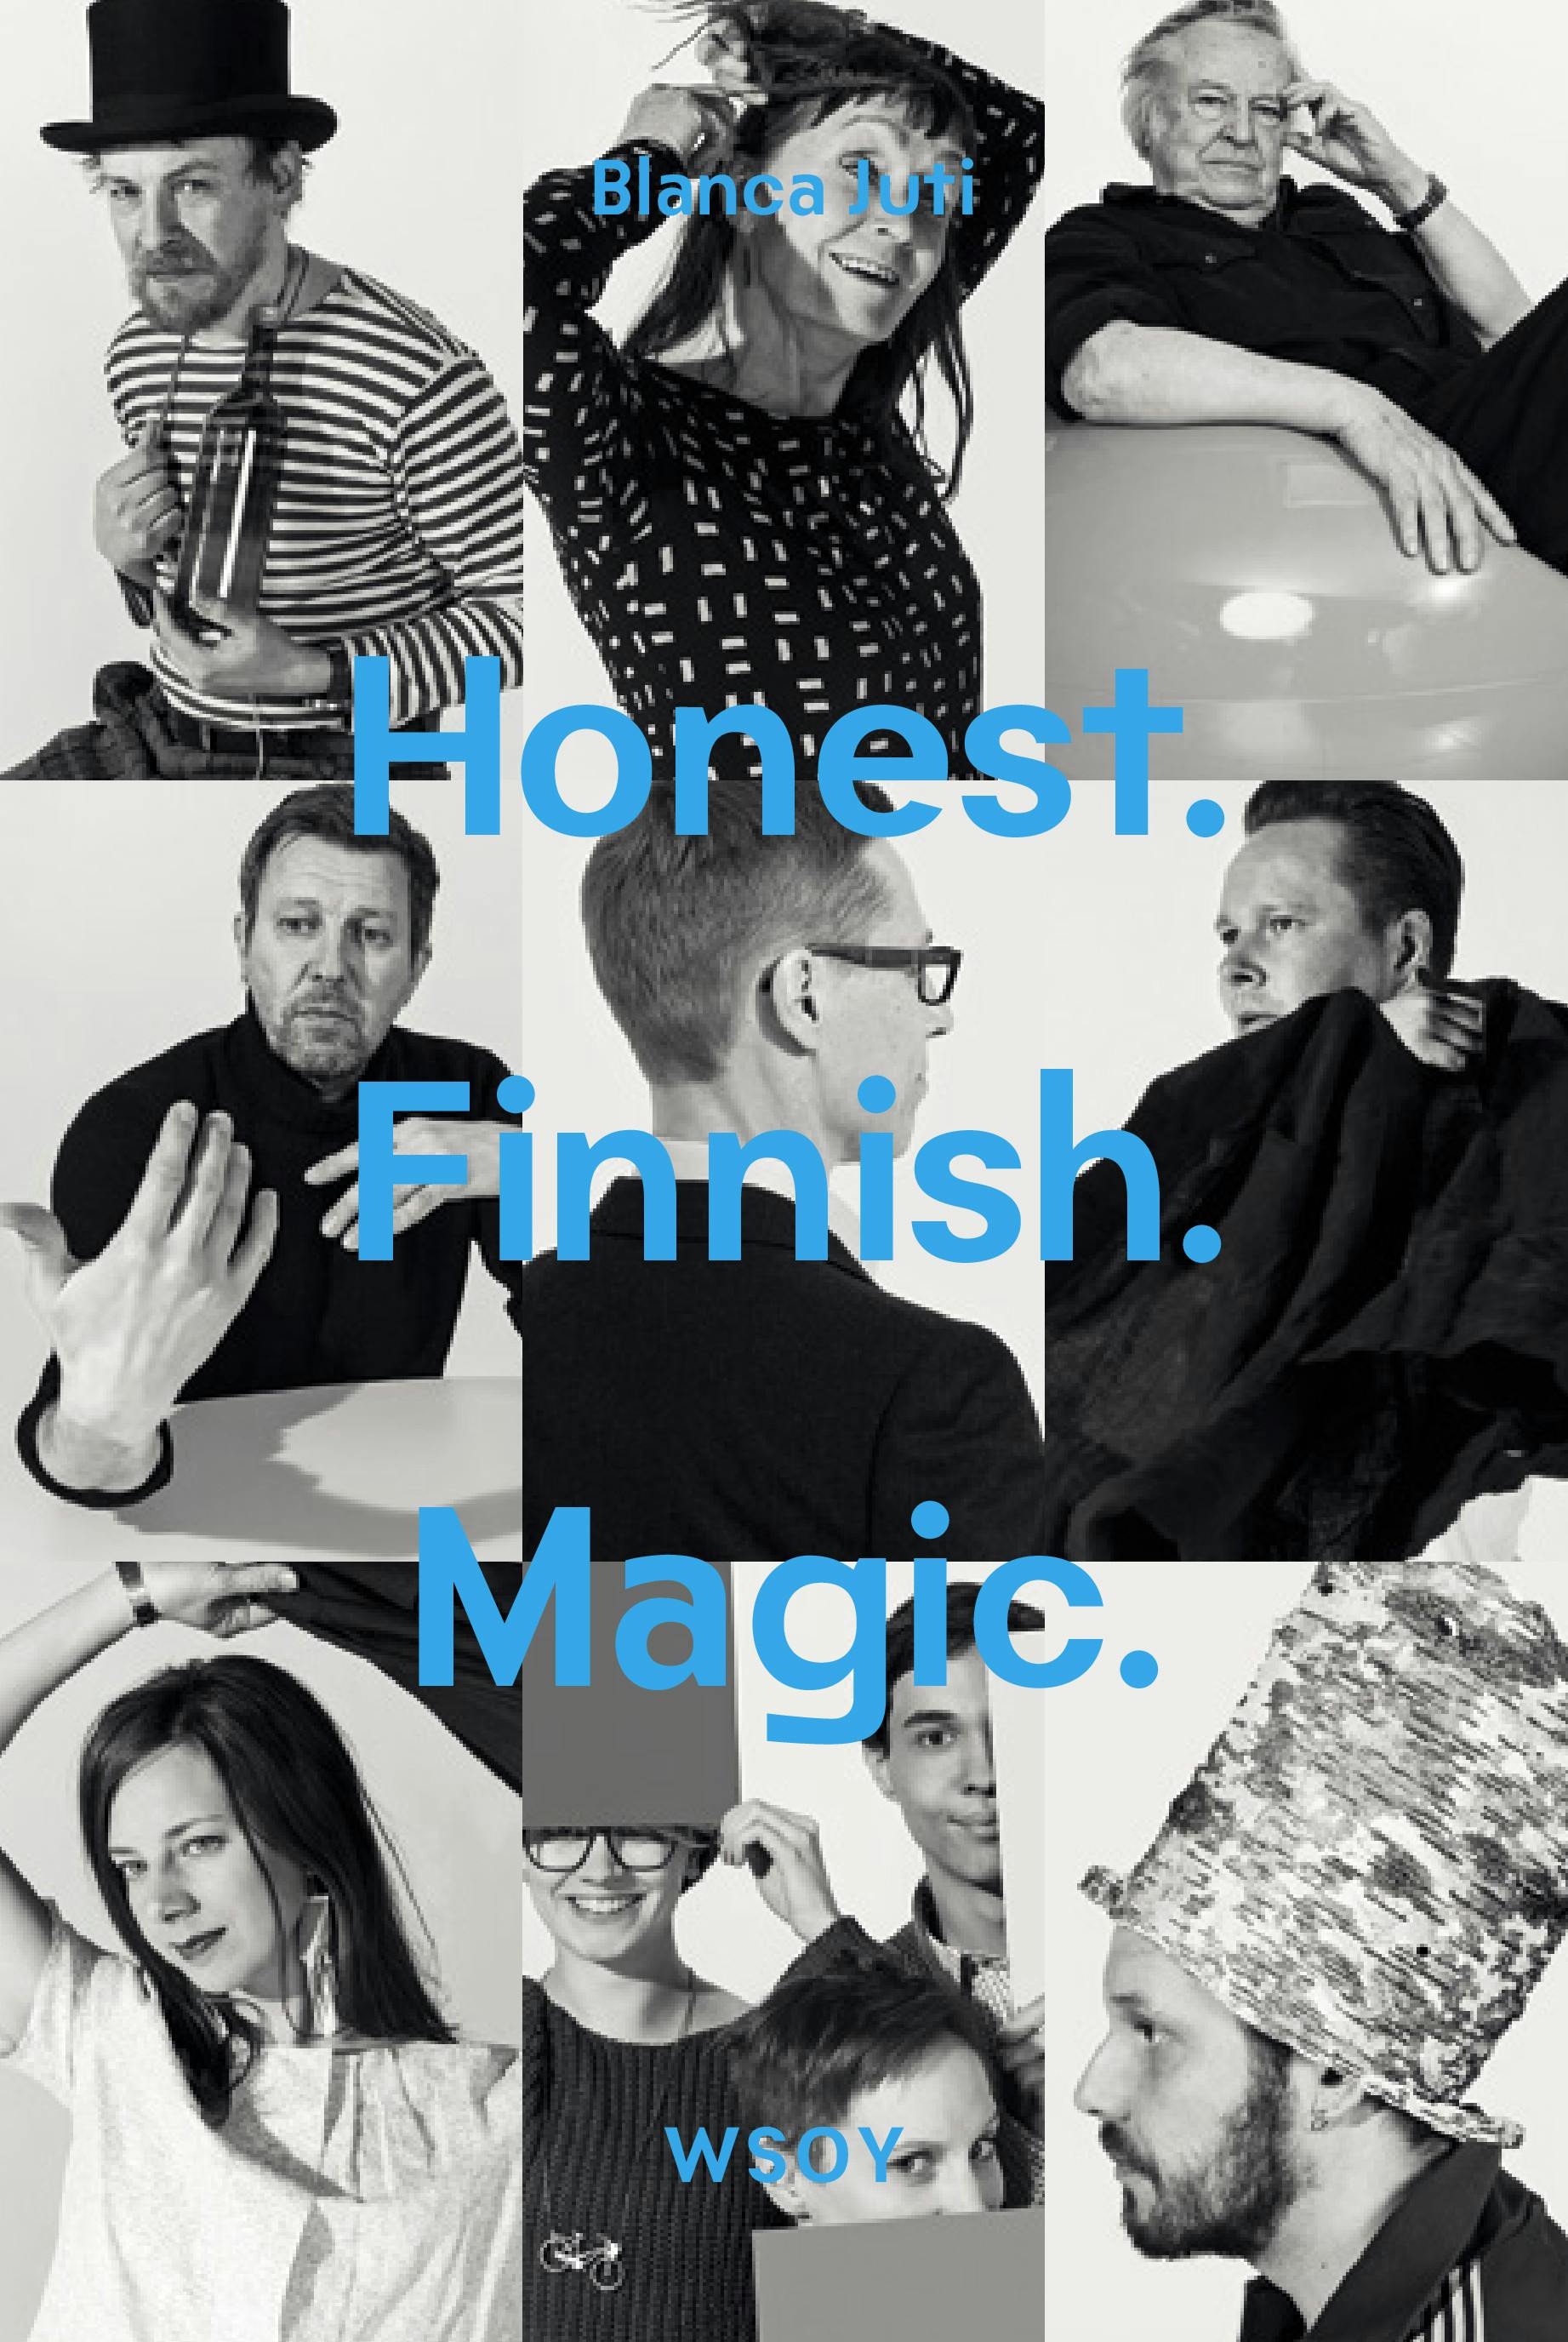 Honest. Finnish. Magic. - undefined